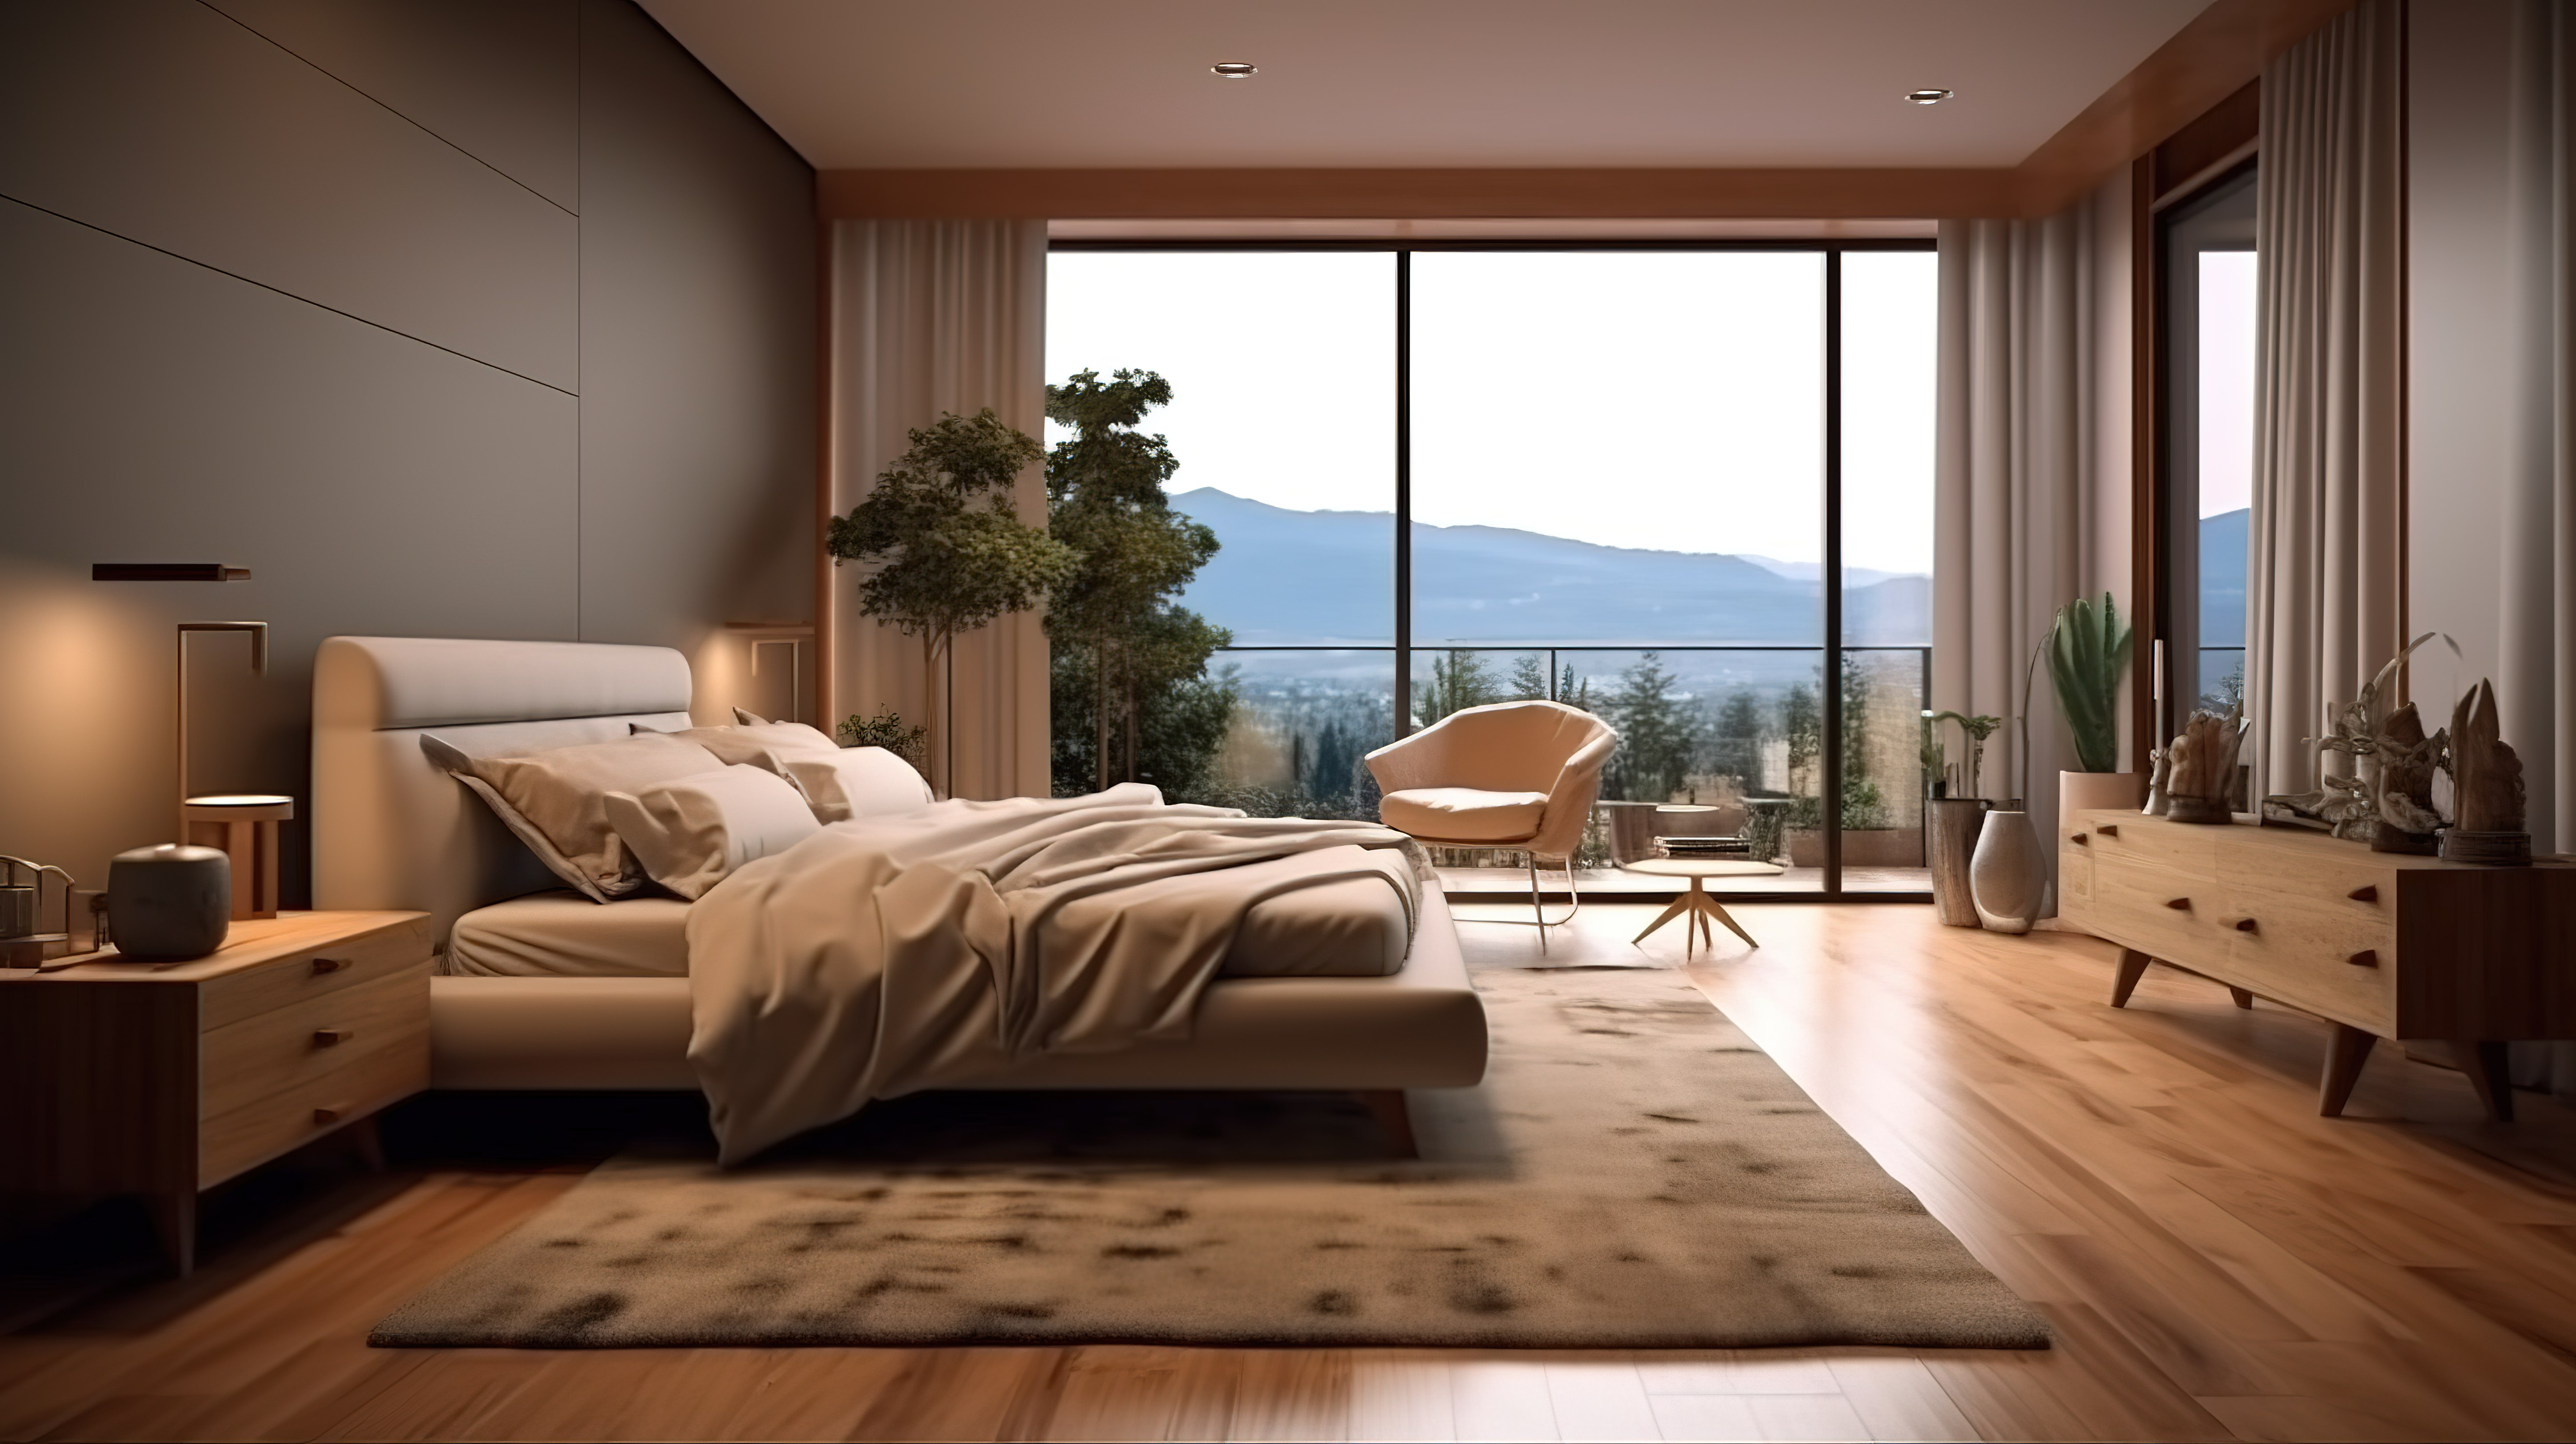 公寓或酒店室内设计中宁静卧室和休闲空间的 3D 渲染图片